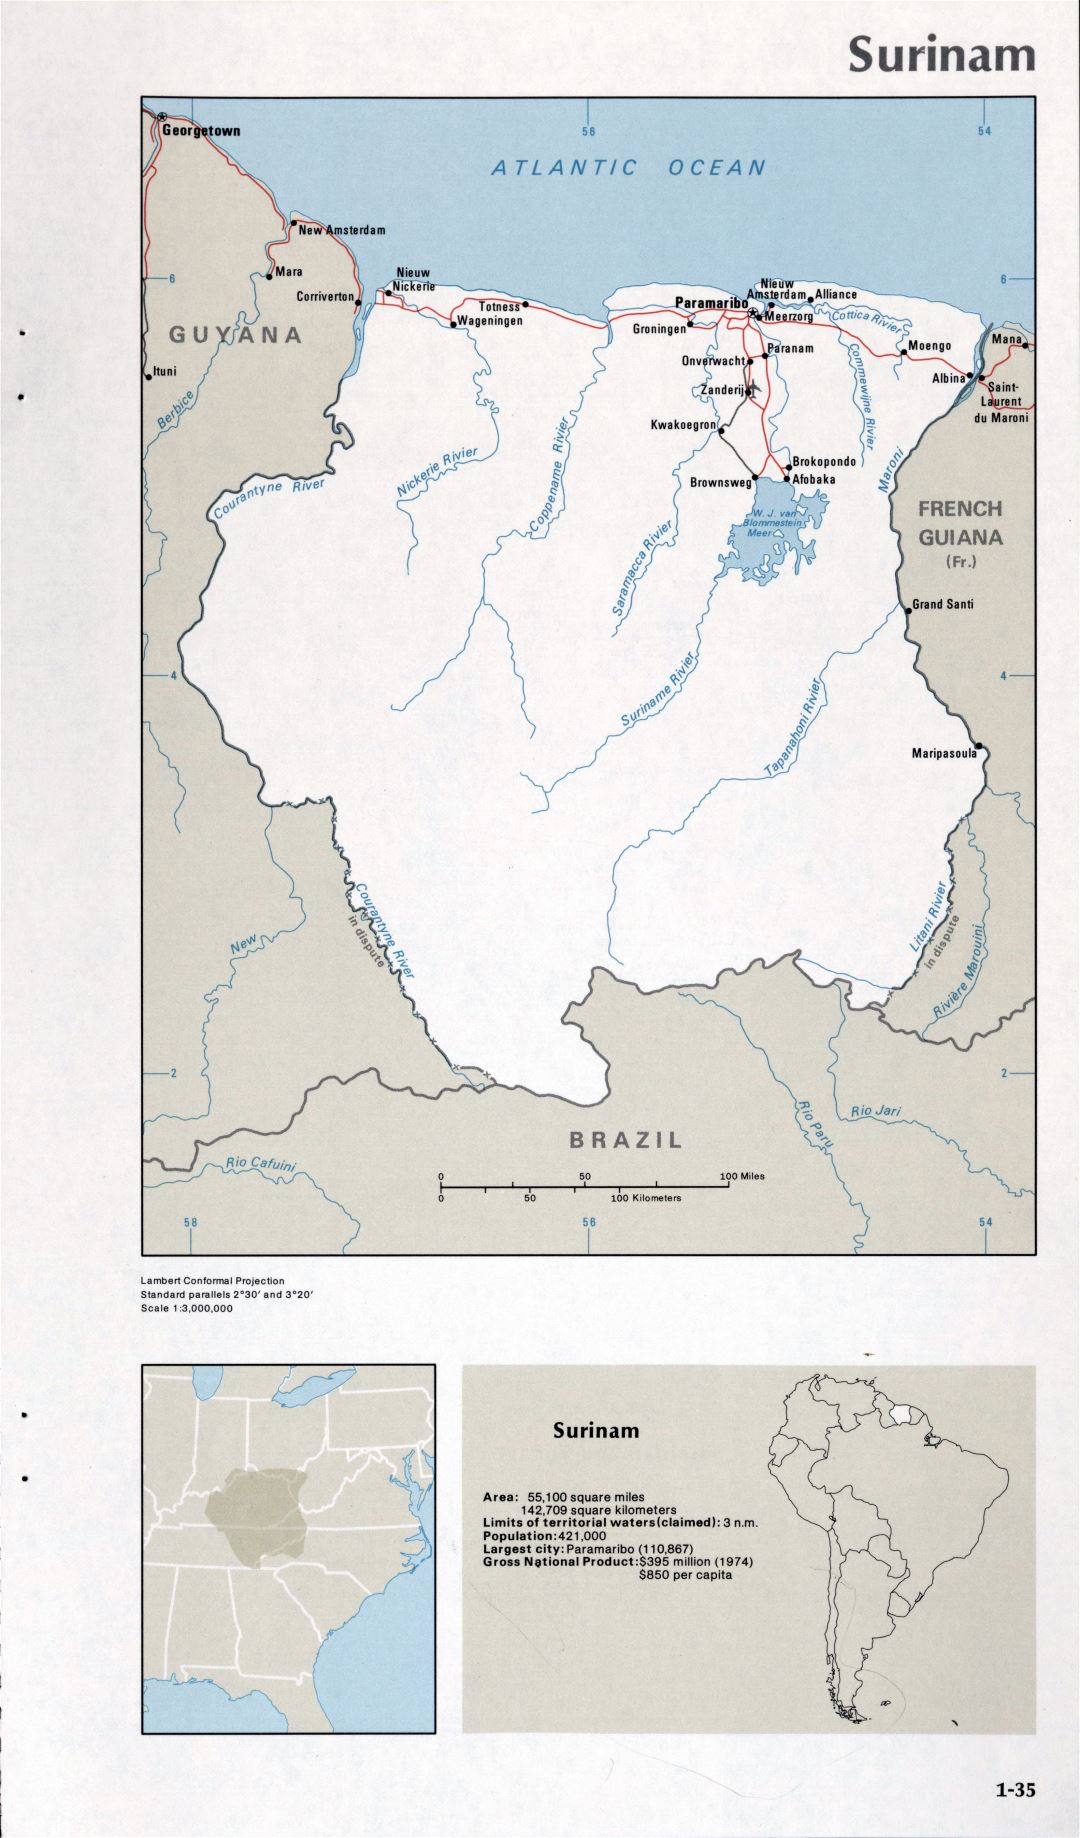 Map of Surinam (1-35)